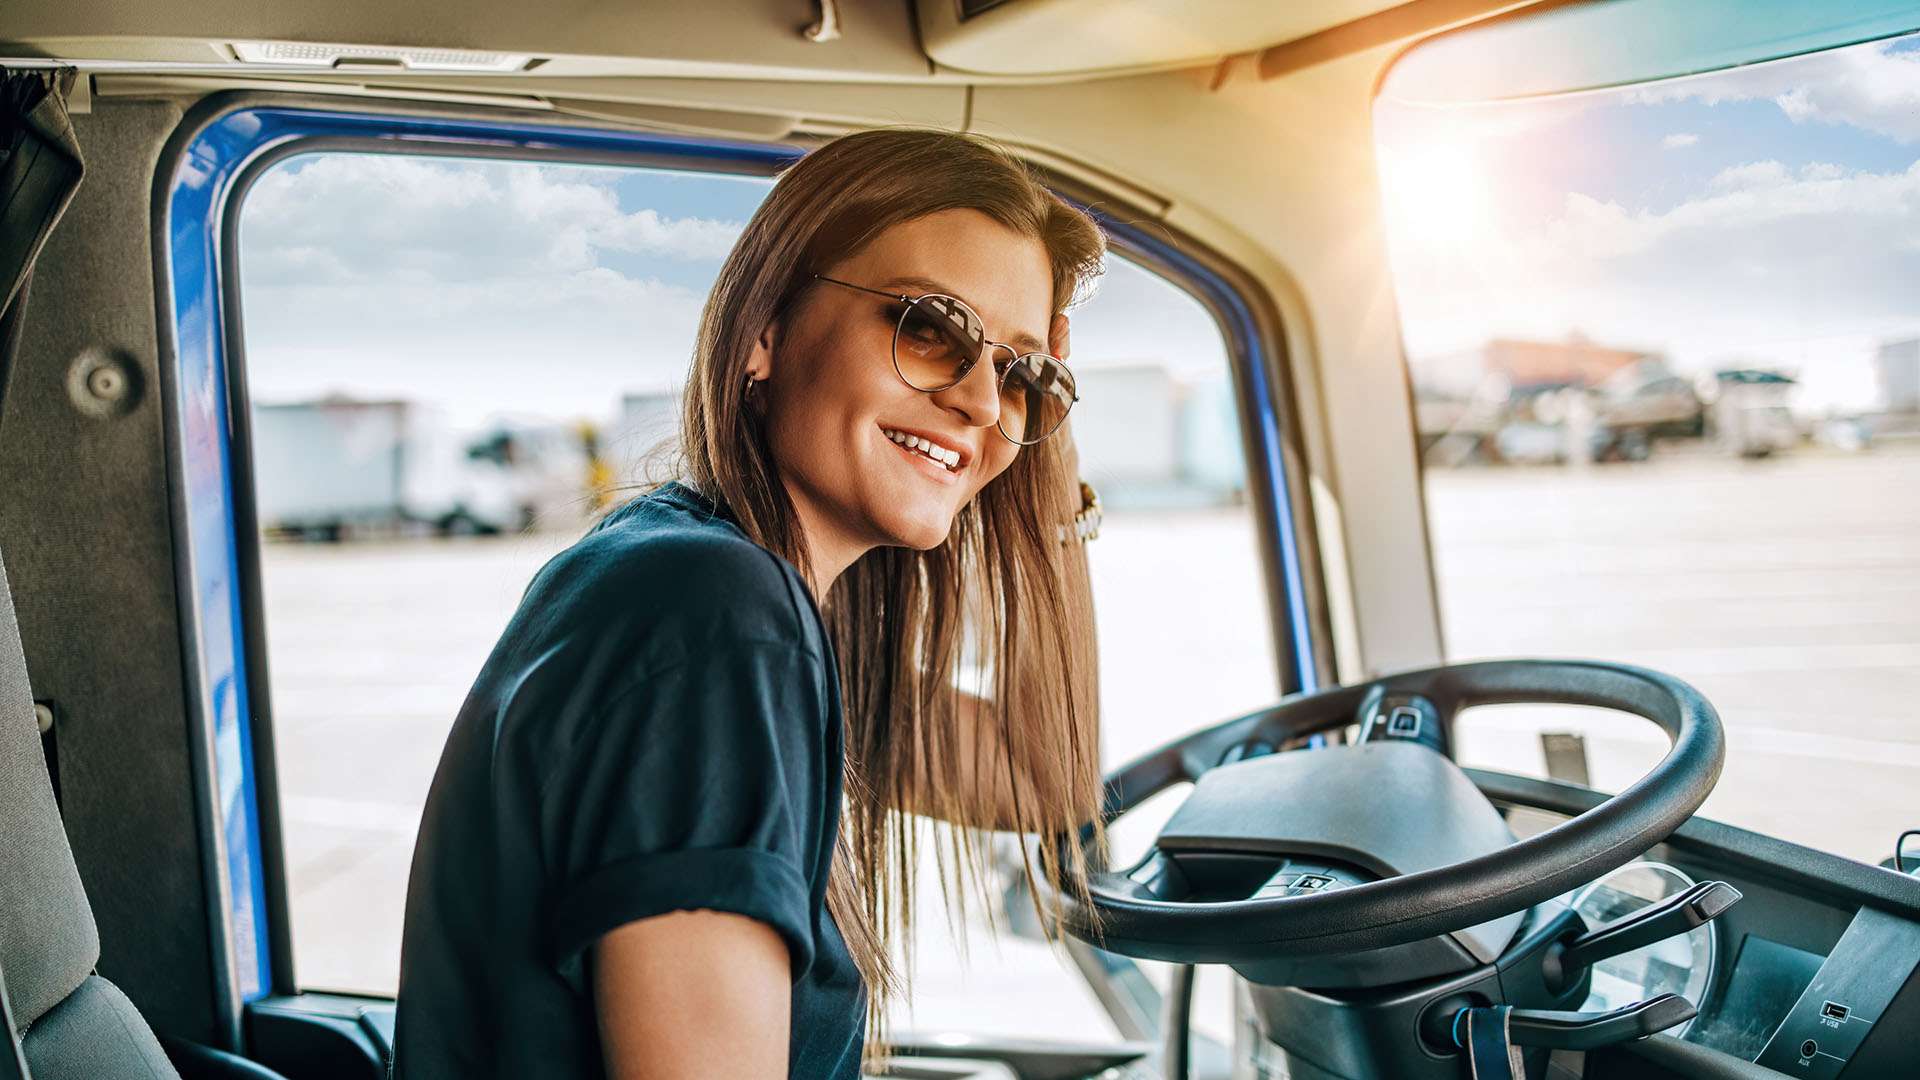 Portrait de jeune femme chauffeur de camion professionnel assis et conduisant un gros camion. Intérieur du véhicule. Concept de personnes et de transport.